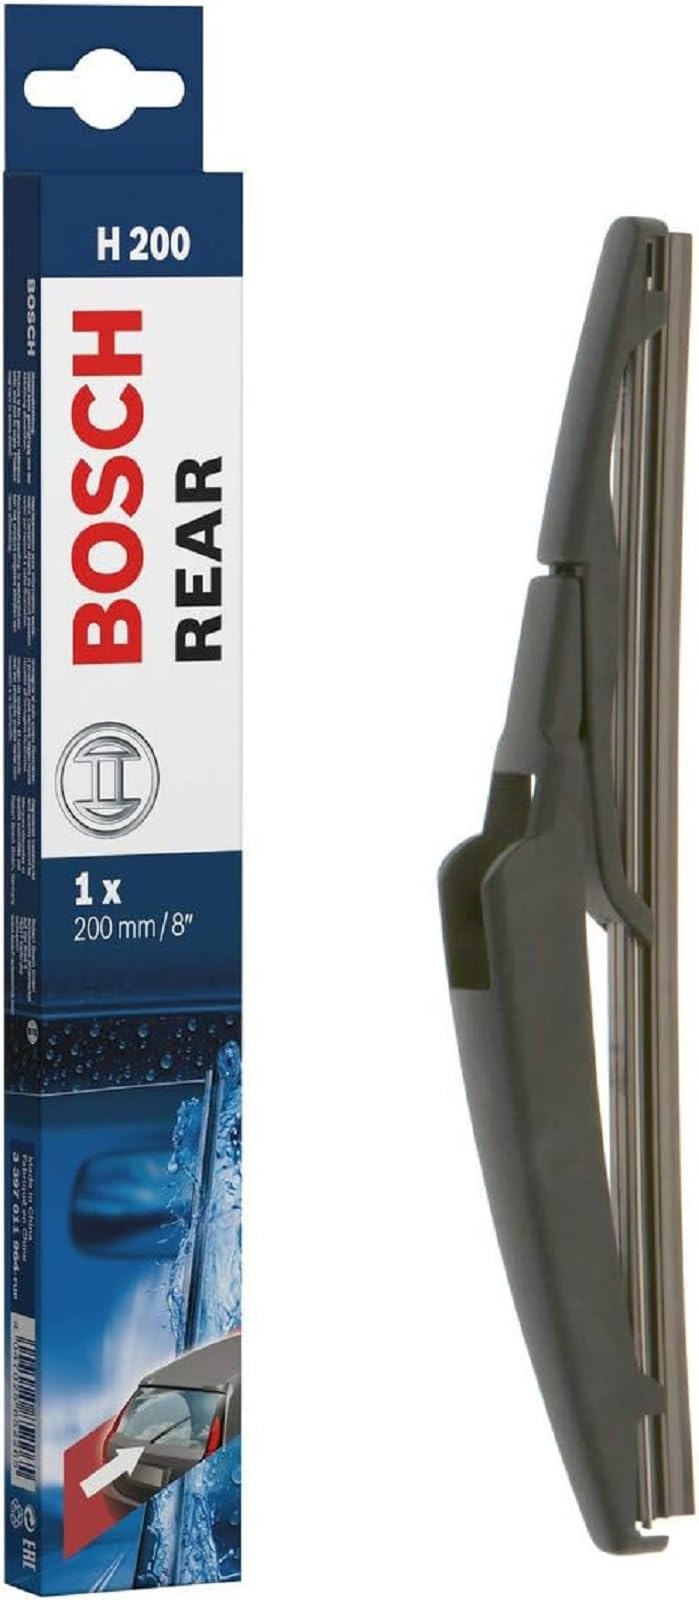 Bosch Scheibenwischer Rear H200, Länge: 200mm – Scheibenwischer für Heckscheibe von Bosch Automotive